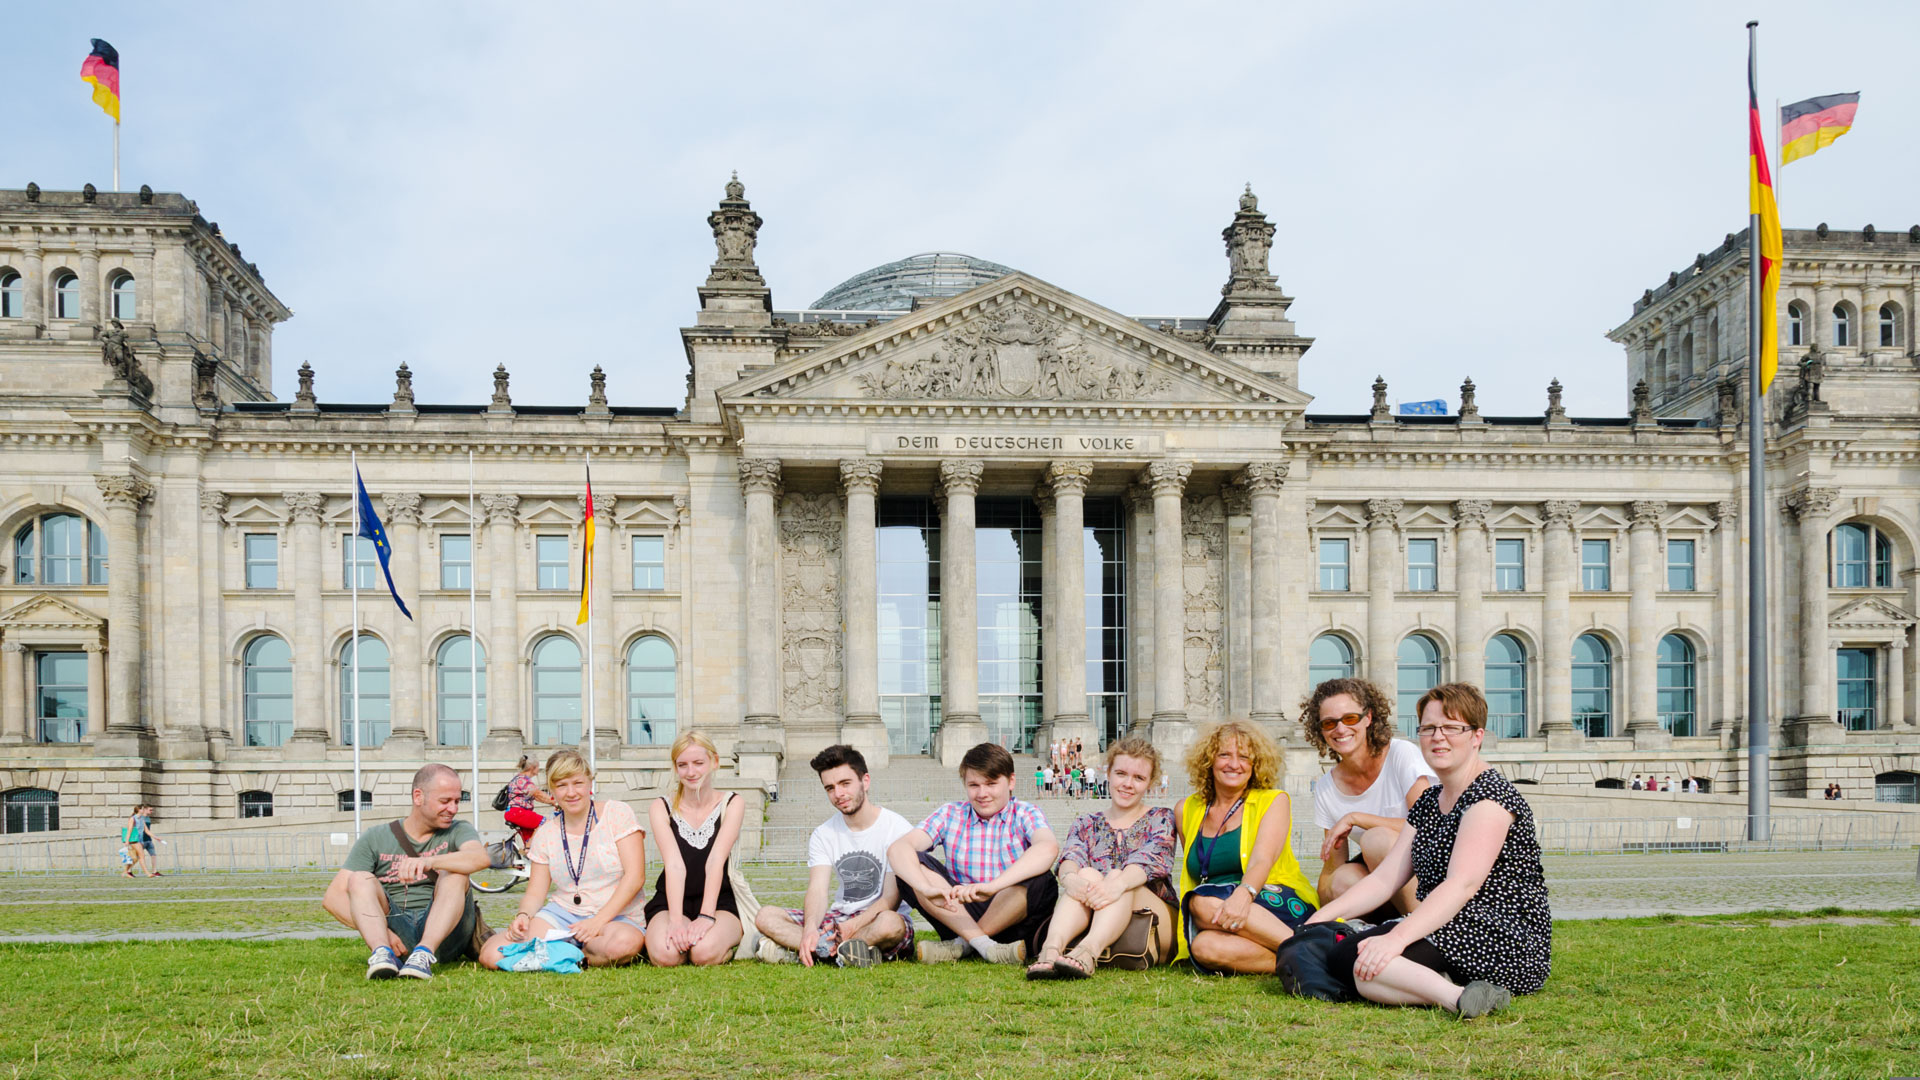 Os passeios pela cidade, aqui no Reichstag, fazem parte do programa de lazer.